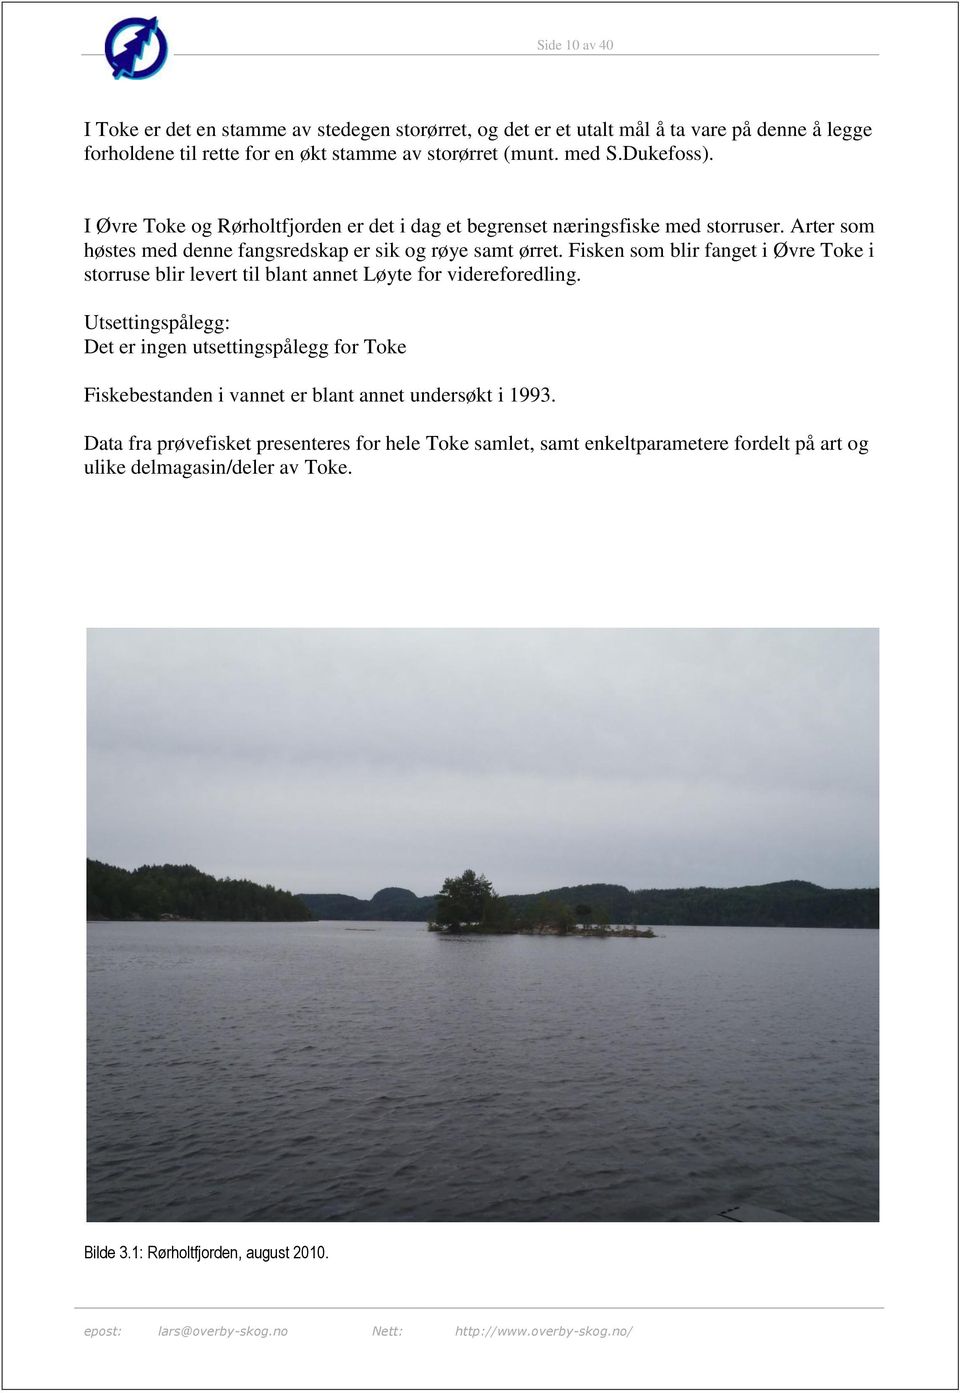 Fisken som blir fanget i Øvre Toke i storruse blir levert til blant annet Løyte for videreforedling.